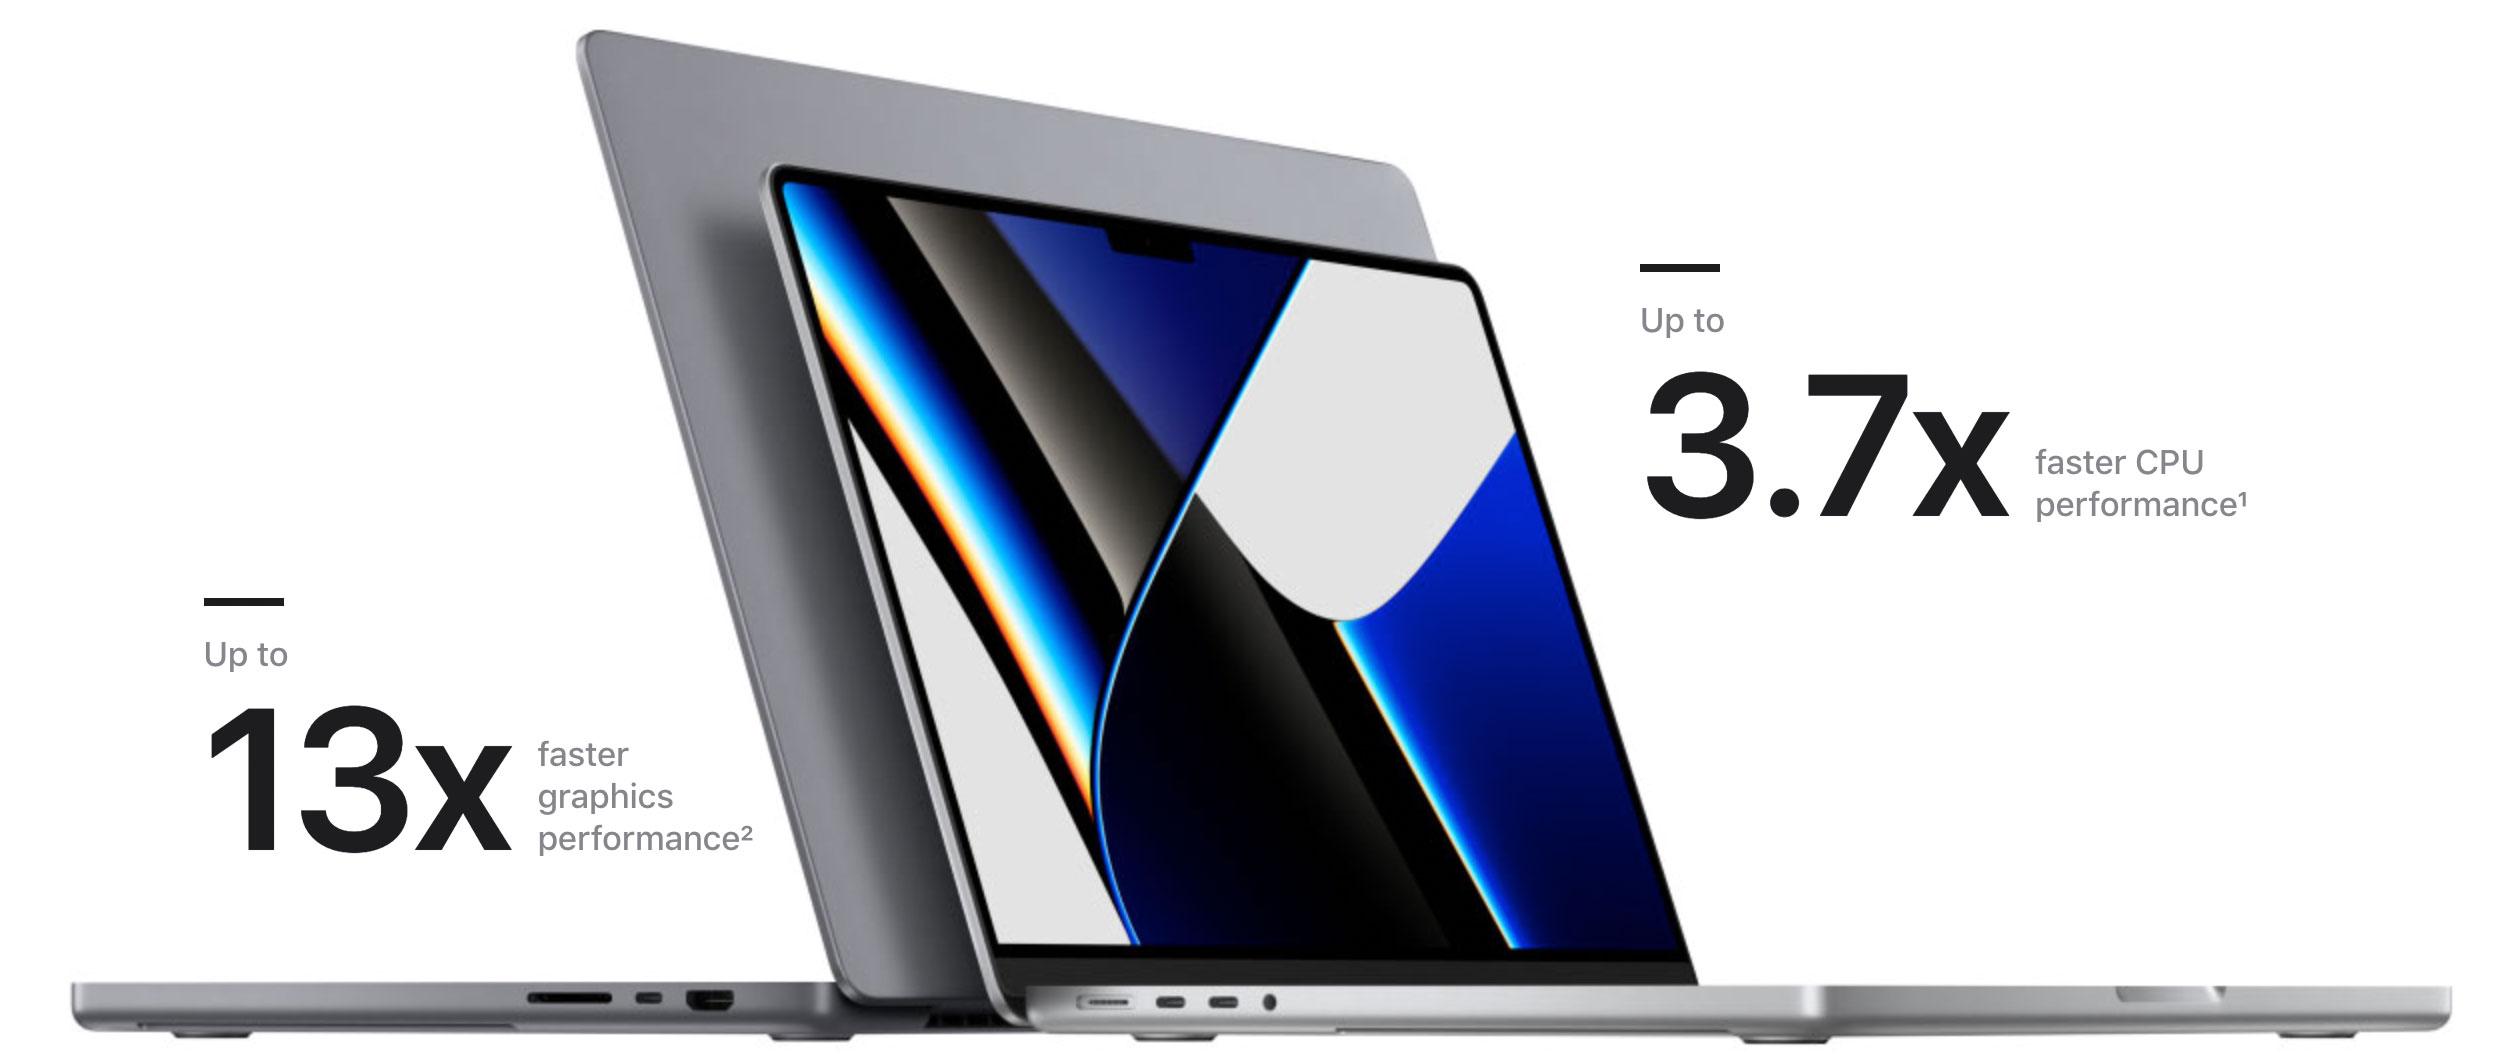 Comparación de rendimiento del MacBook Pro con M1 Pro o M1 Max